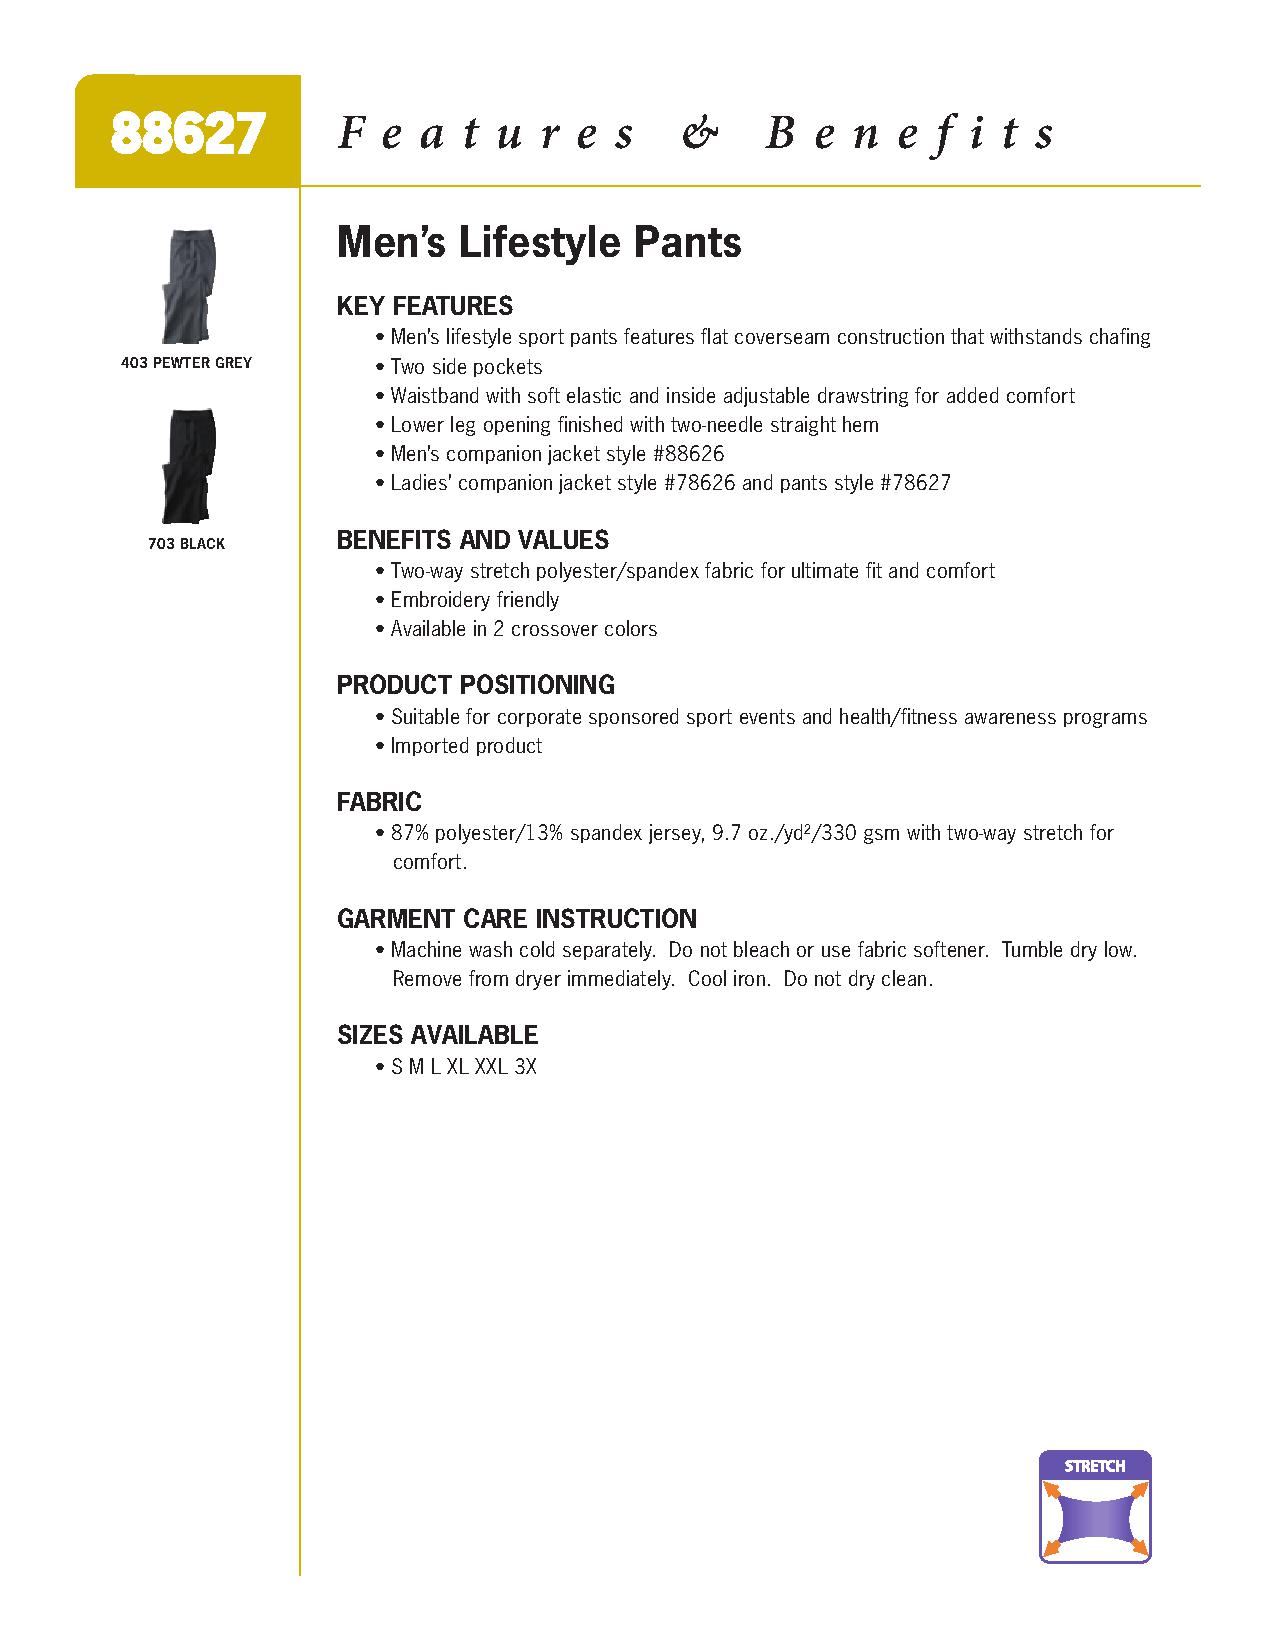 Ash City Lifestyle Separates 88627 - Men's Lifestyle Pants